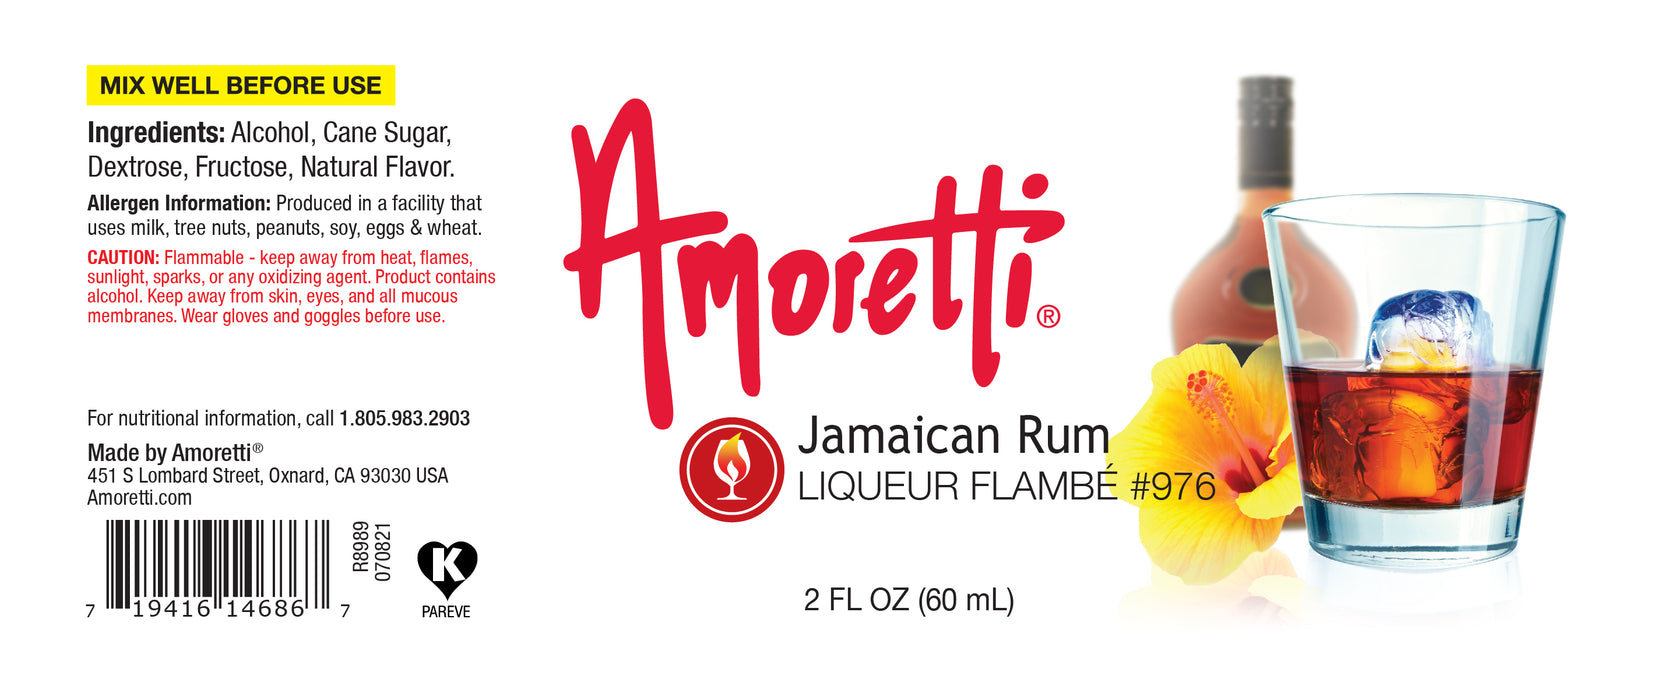 Jamaican Rum Liqueur Flambe